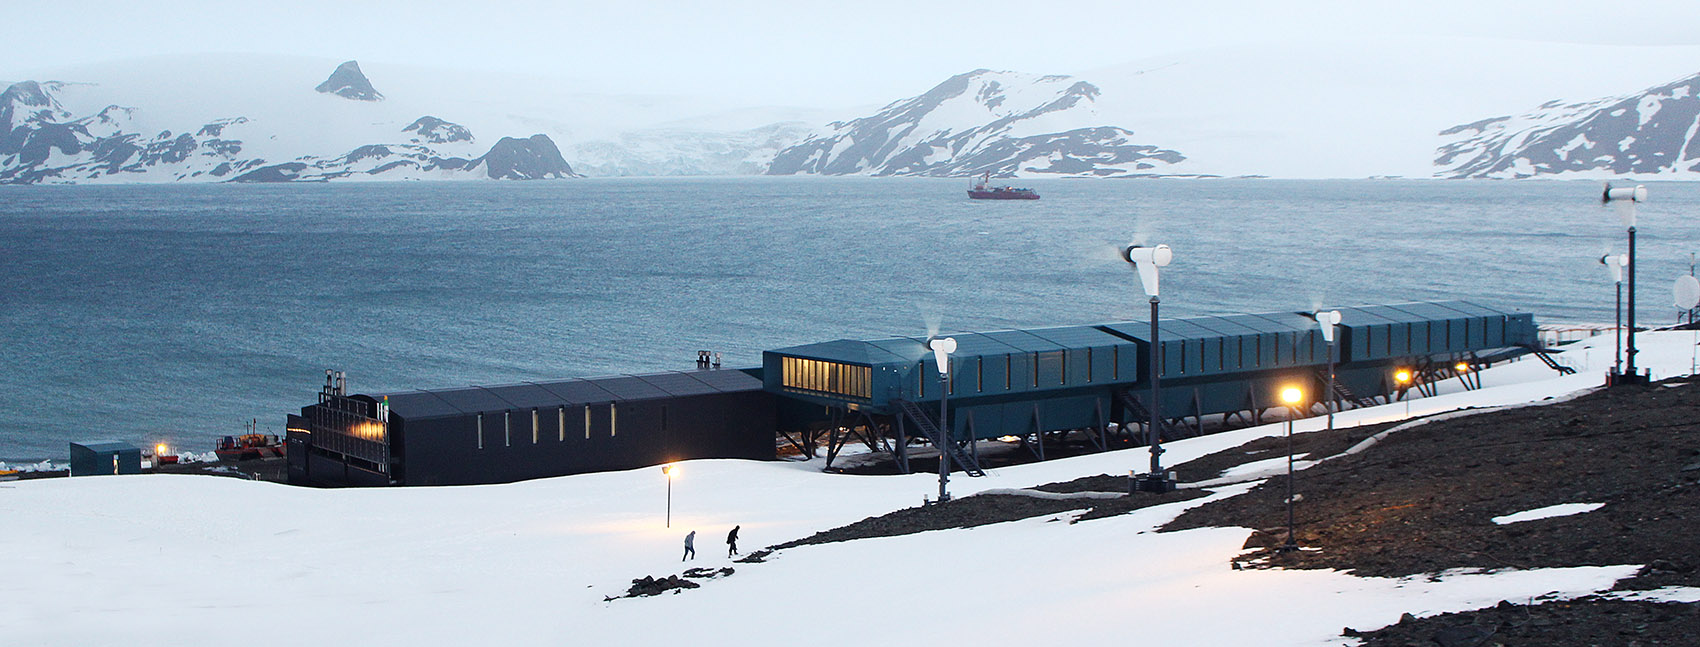 Comandante Ferraz南极站，南极洲/冰天雪地中的庇护所-3